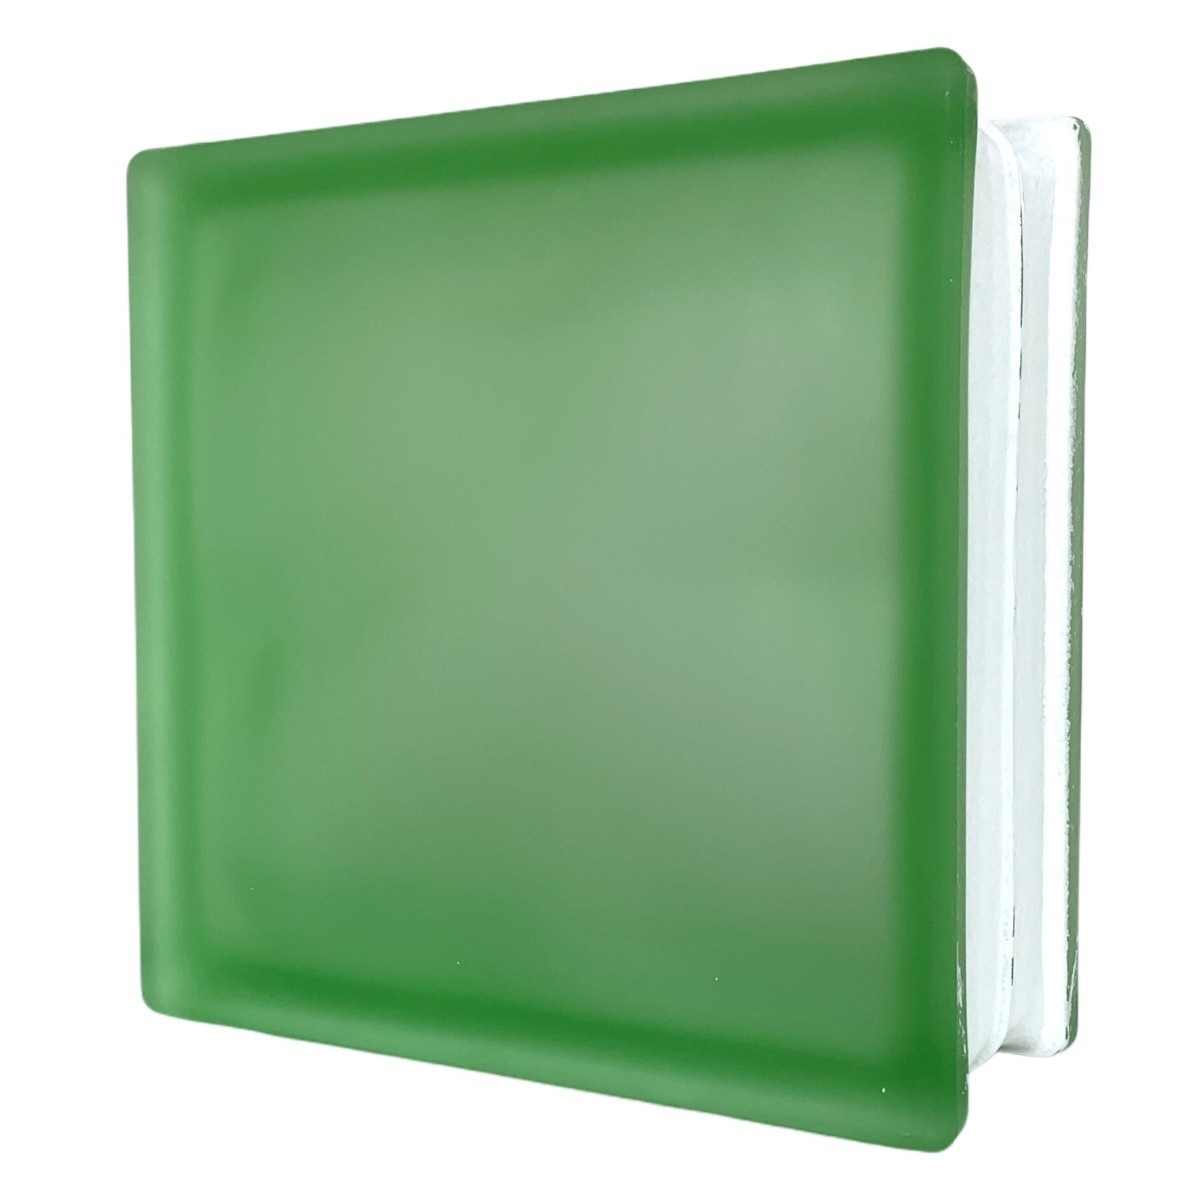 ガラスブロック 国際基準サイズ 世界で有名なブランド品 厚み80mmグリーン緑ミスティ雲 gb4680_画像2